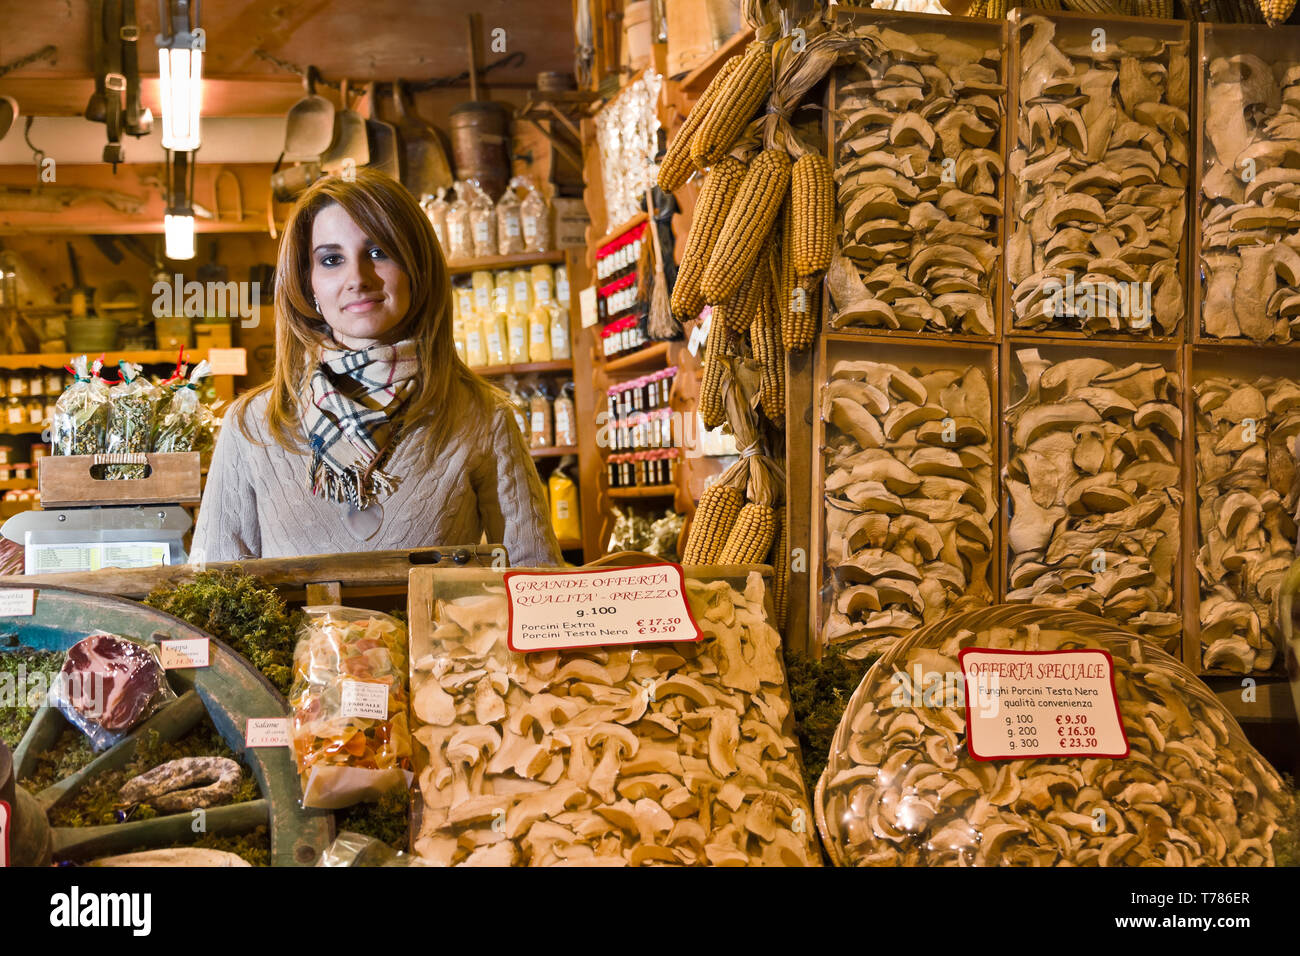 Bormio, negozio 'La Sceleira': Veronica Pozzi (figlia del titolare) dietro a confezioni di funghi Secchi. [ENG] Bormio, 'La Sceleira' Shop: Veronic Stockfoto